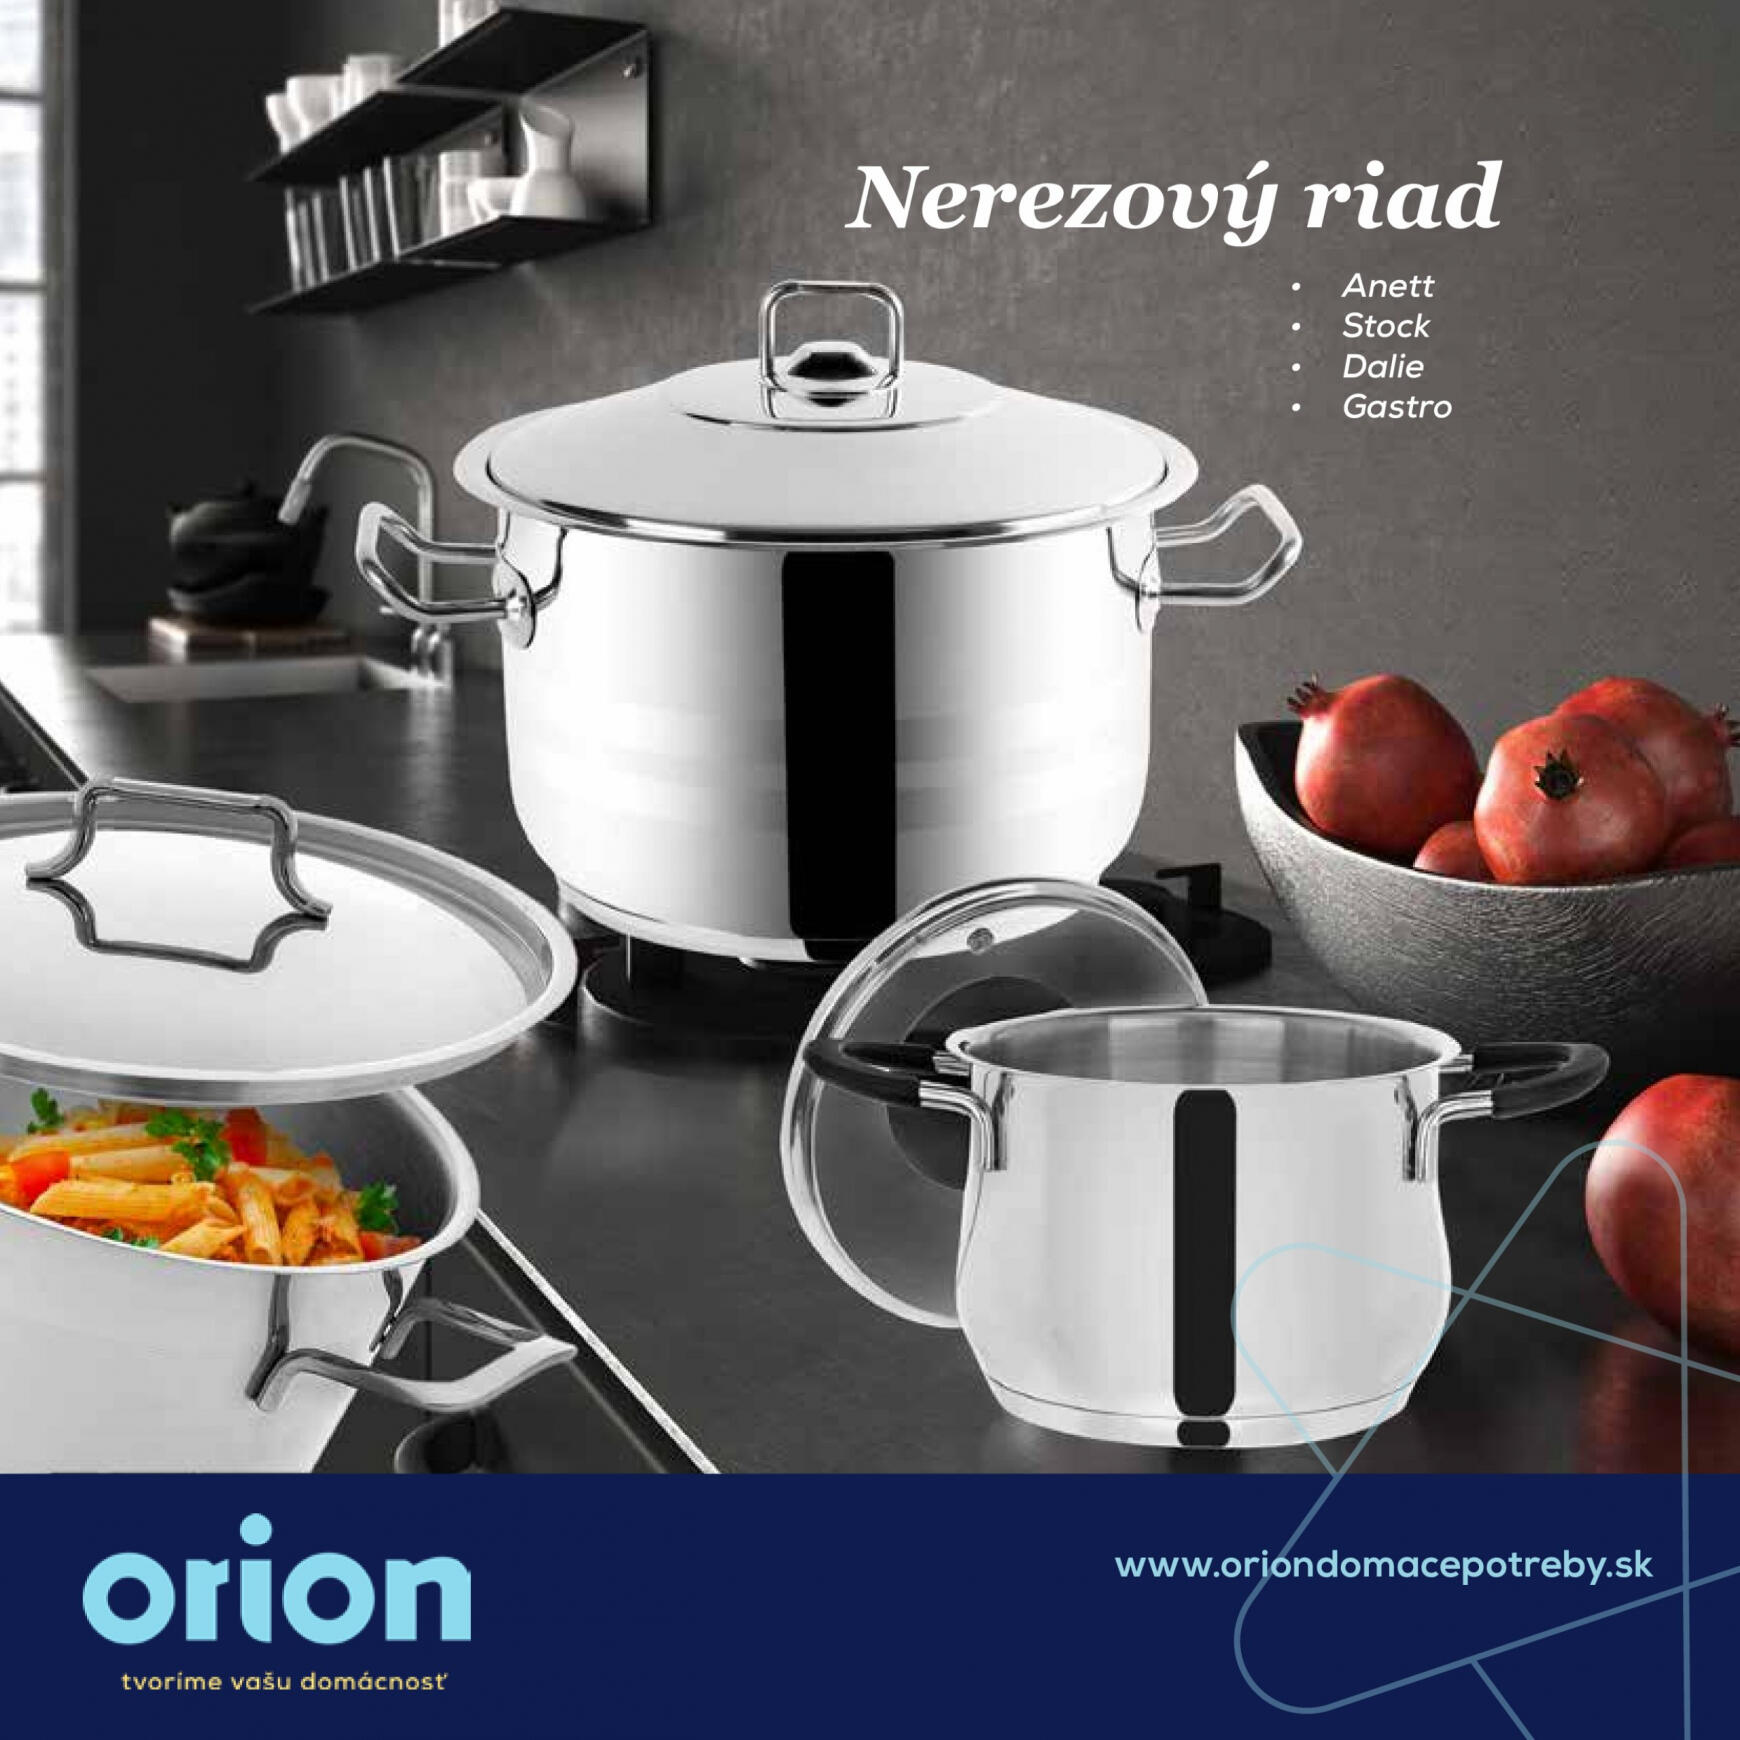 orion - Orion - Kvalitný nerezový riad do každej domácnosti